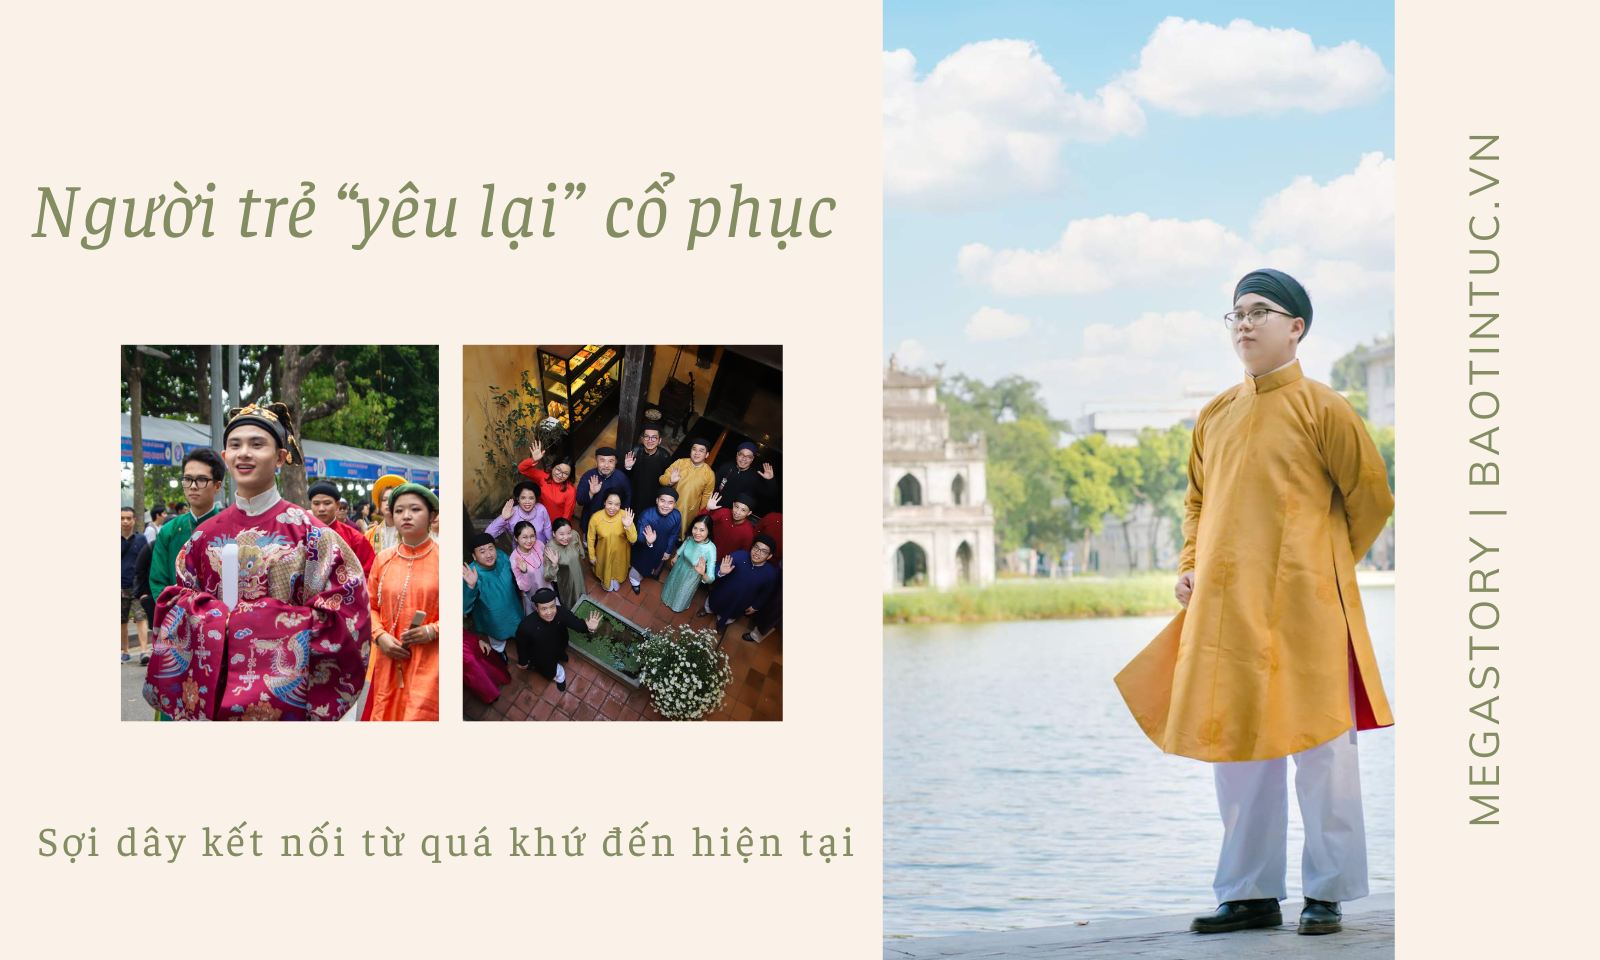 请提供您想要改写的越南语标题，我将为您进行改写。